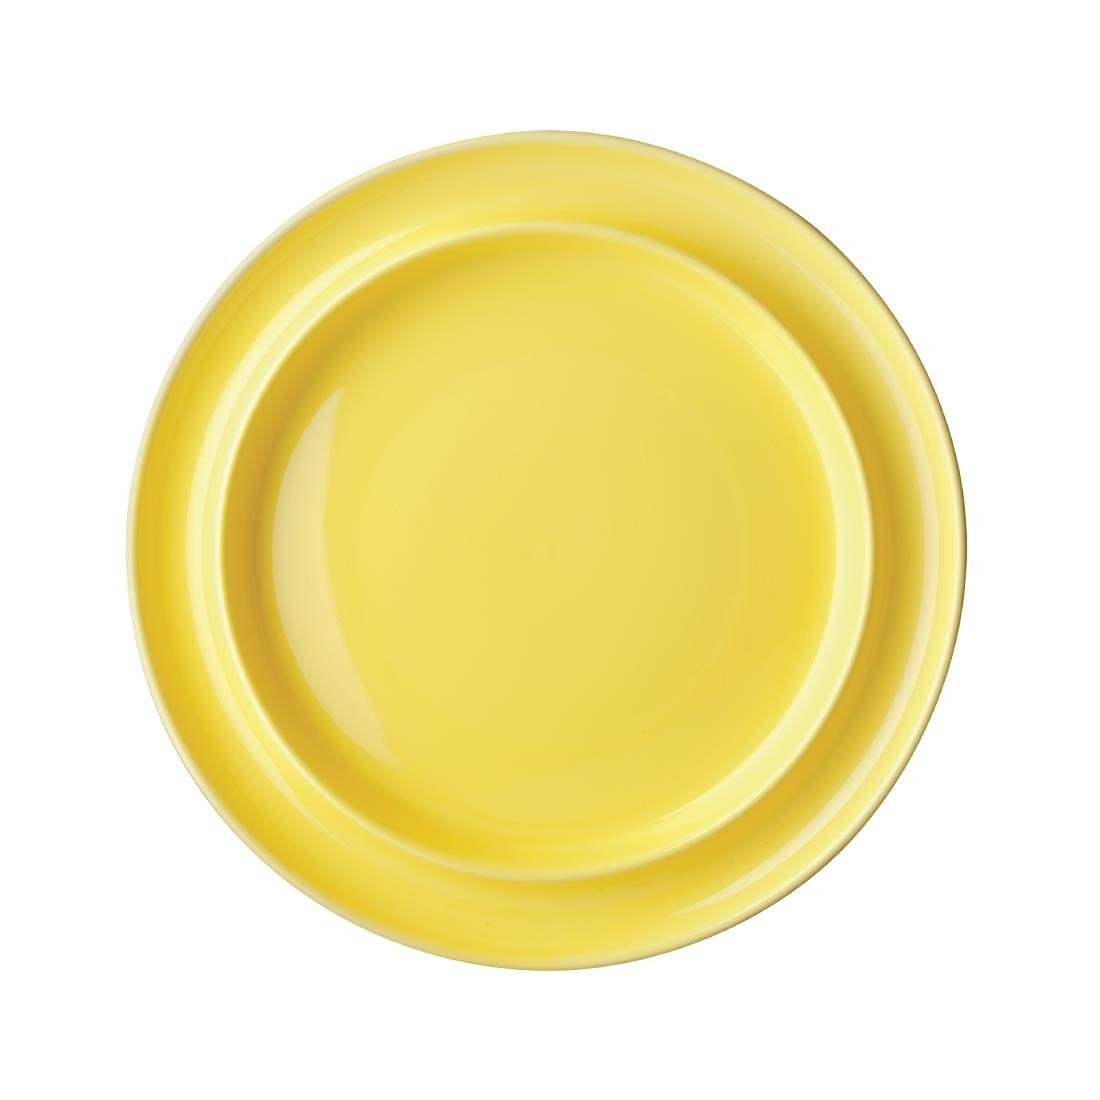 Assiettes bord surélevé Heritage Olympia jaunes 253mm (lot de 4)